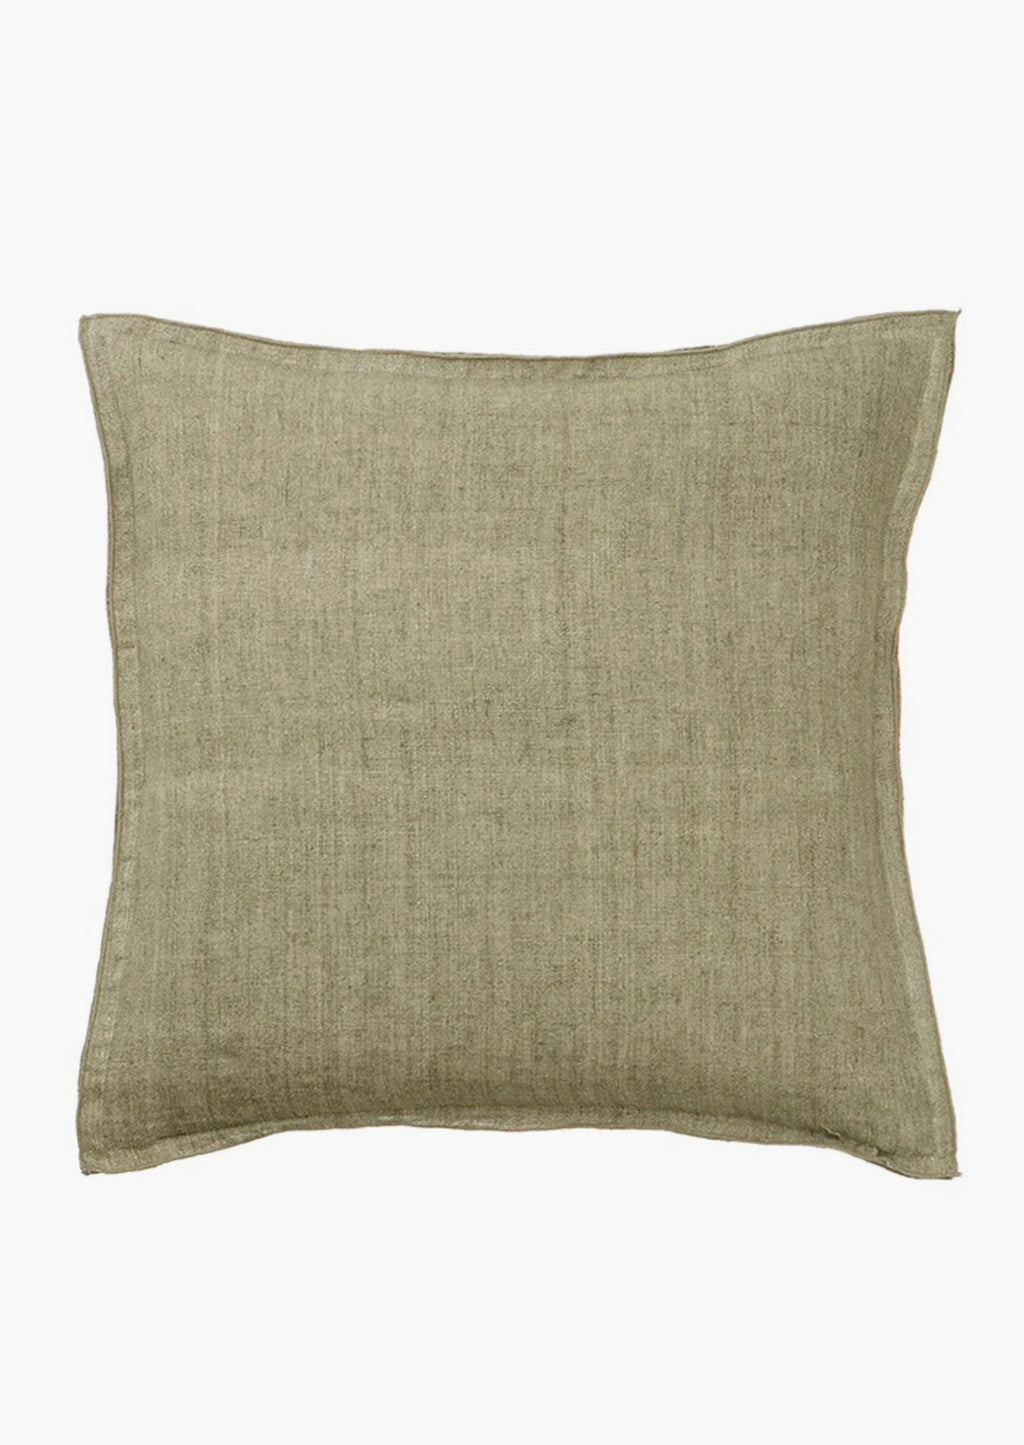 Eucalyptus: A solid linen pillow in eucalyptus grey green.